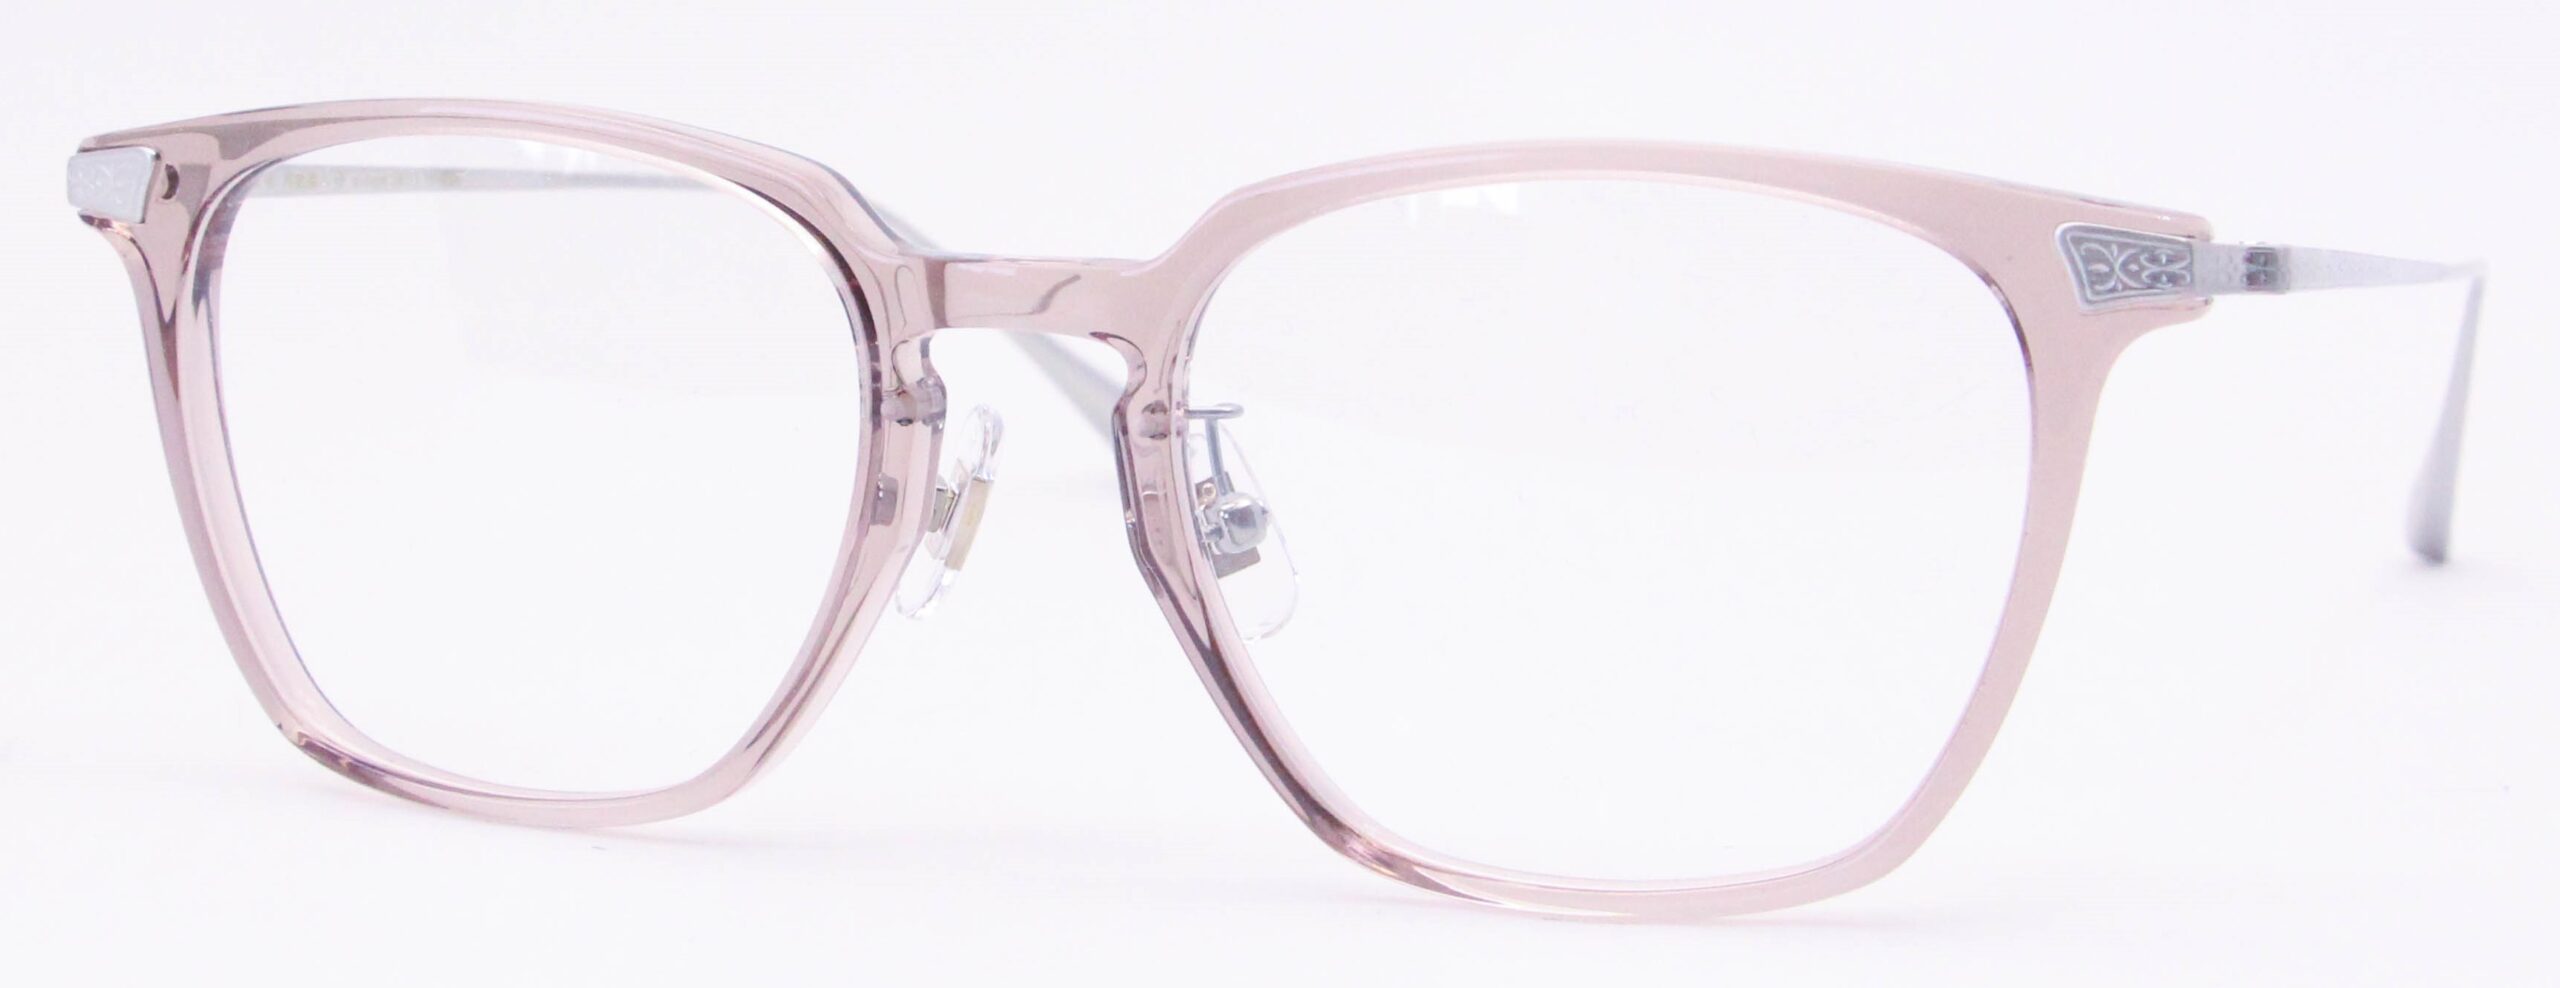 眼鏡のカラータイプC-6 Pink-Brown/Silver